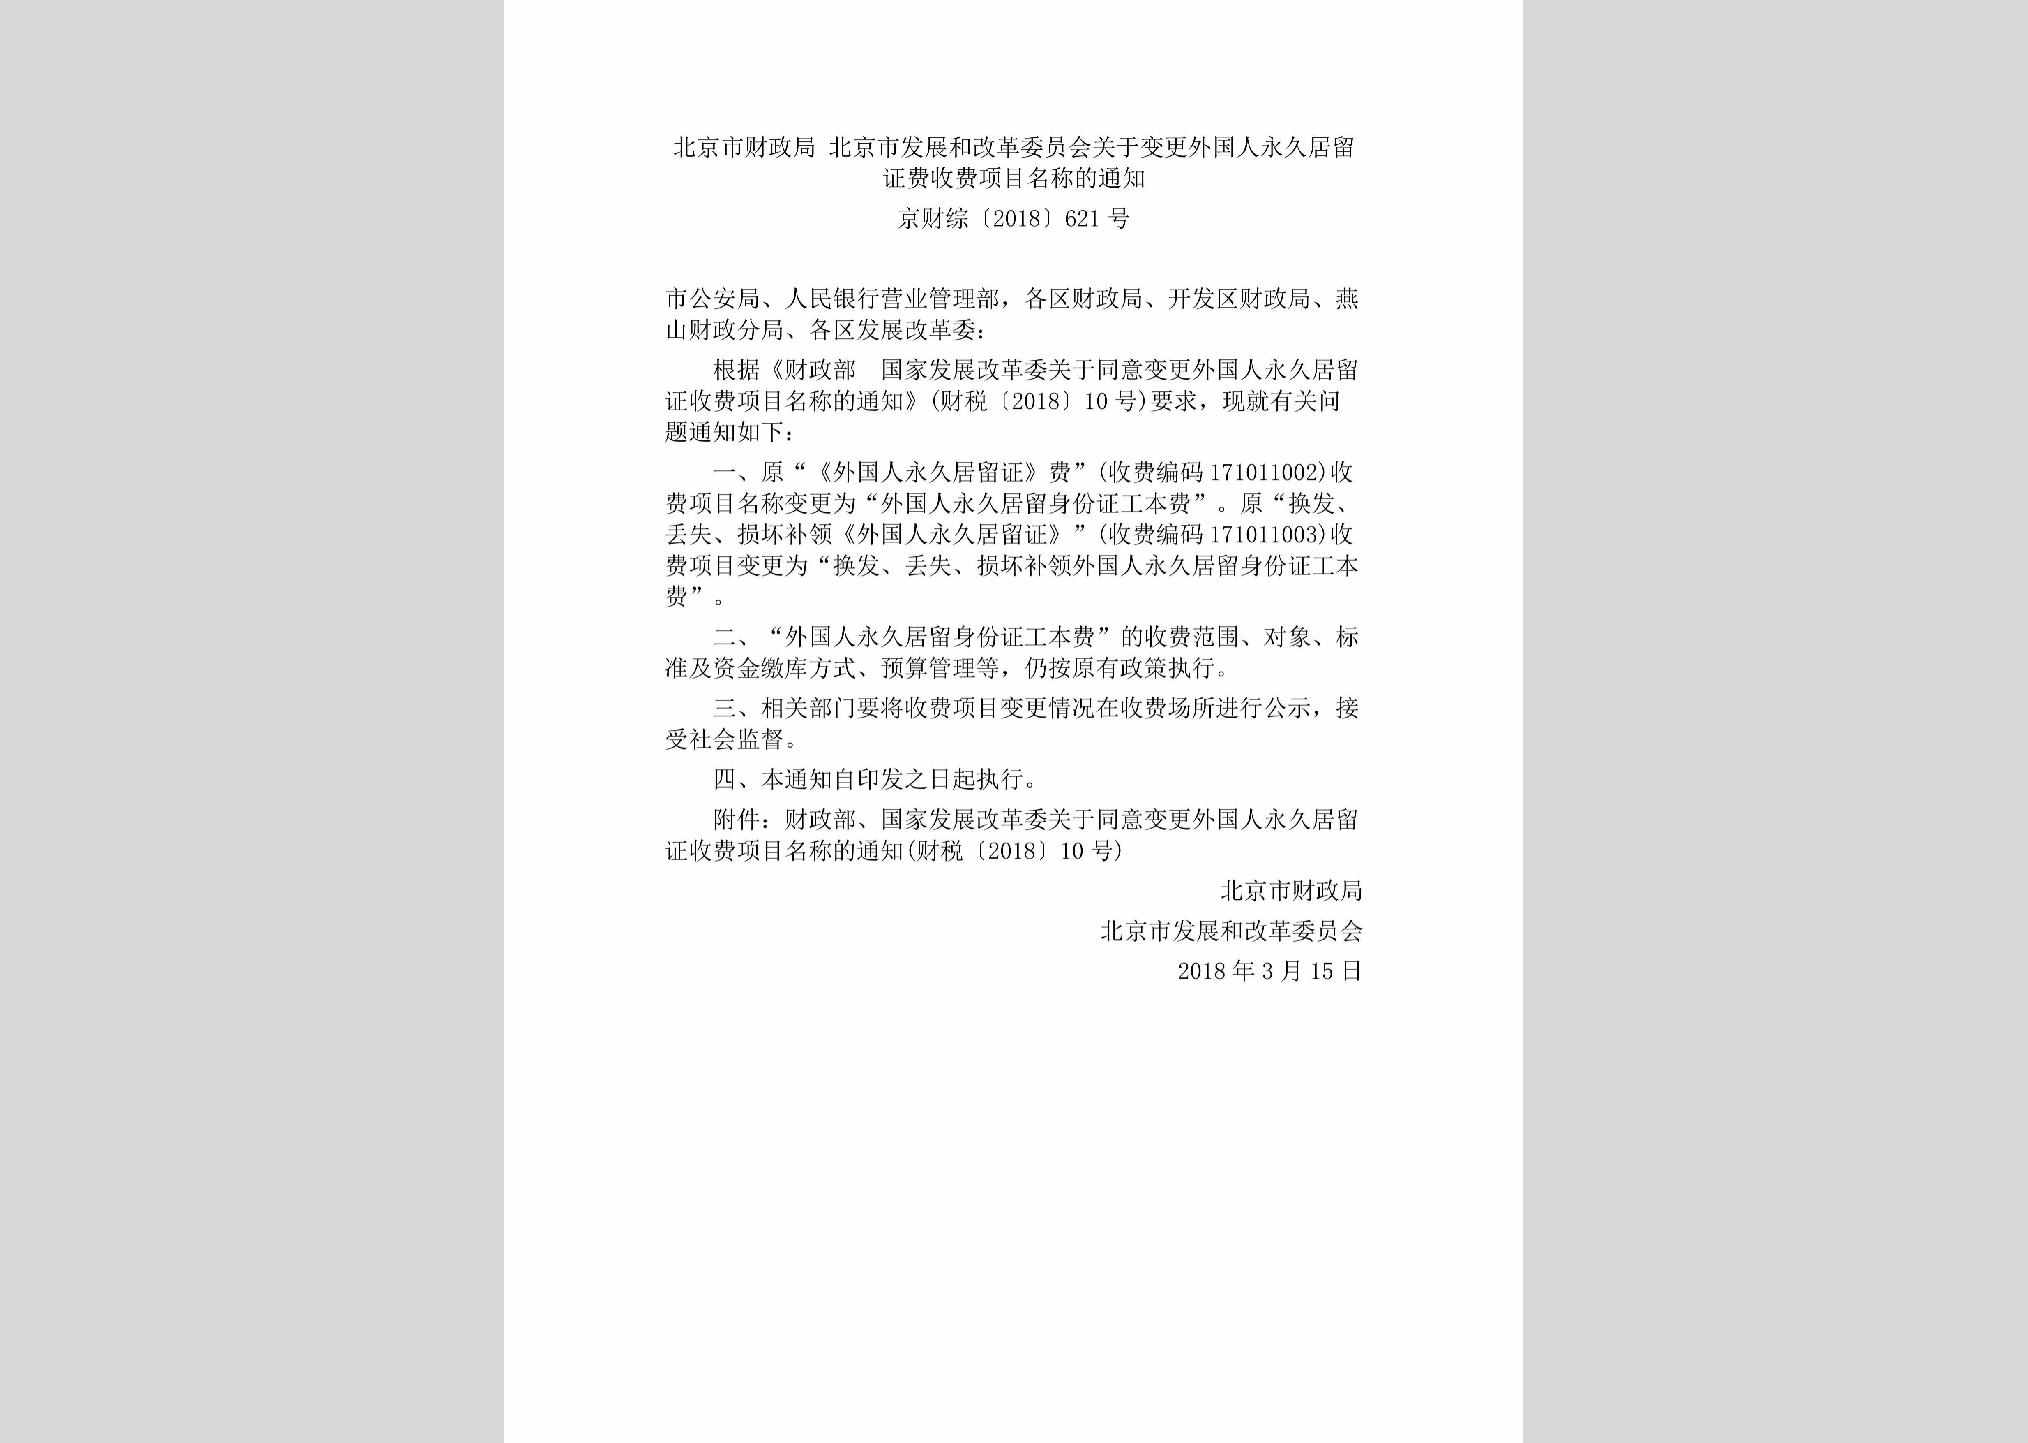 京财综[2018]621号：北京市财政局北京市发展和改革委员会关于变更外国人永久居留证费收费项目名称的通知